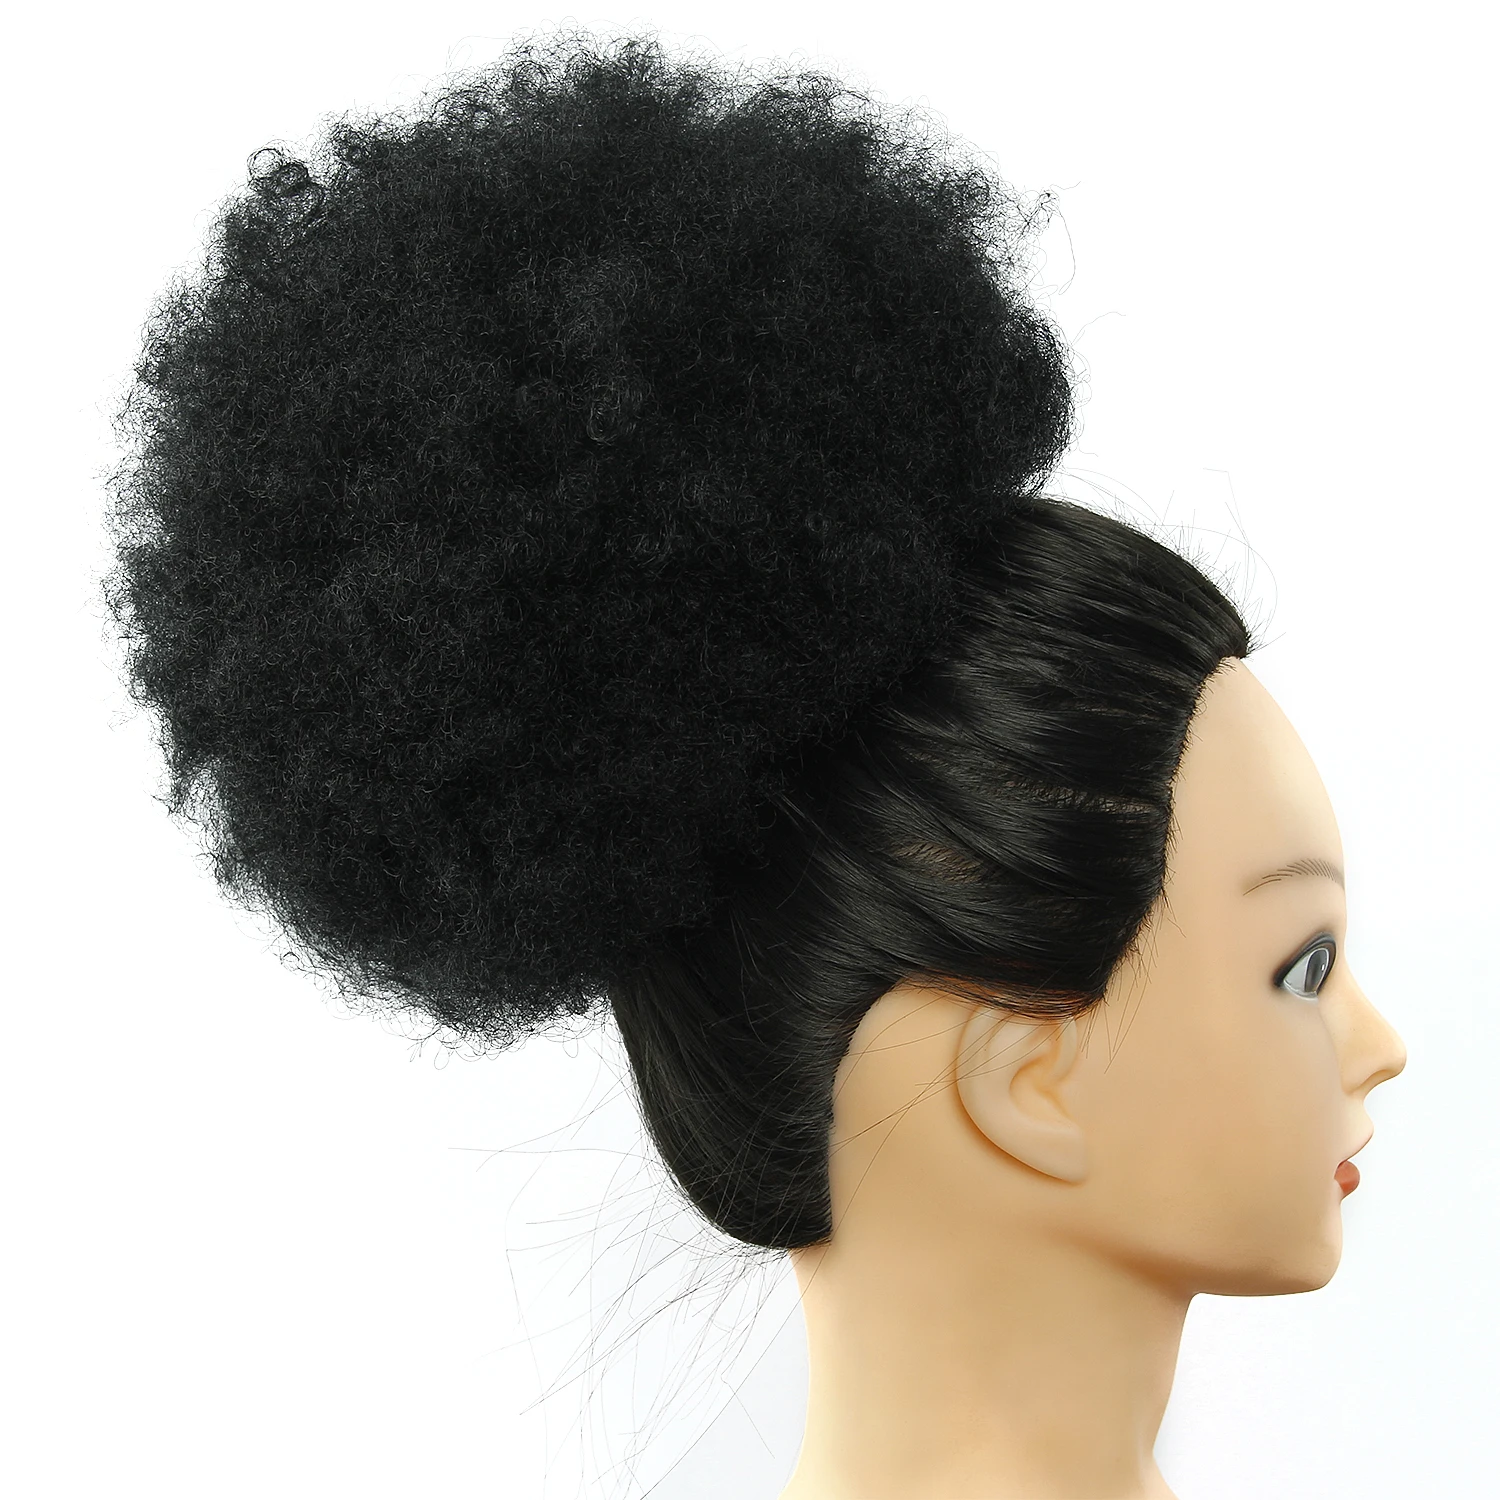 Синтетический шиньон волос булочка афро кудрявый шнурок короткие волосы штук диаметр 10 дюймов волосы булочка афро шиньон